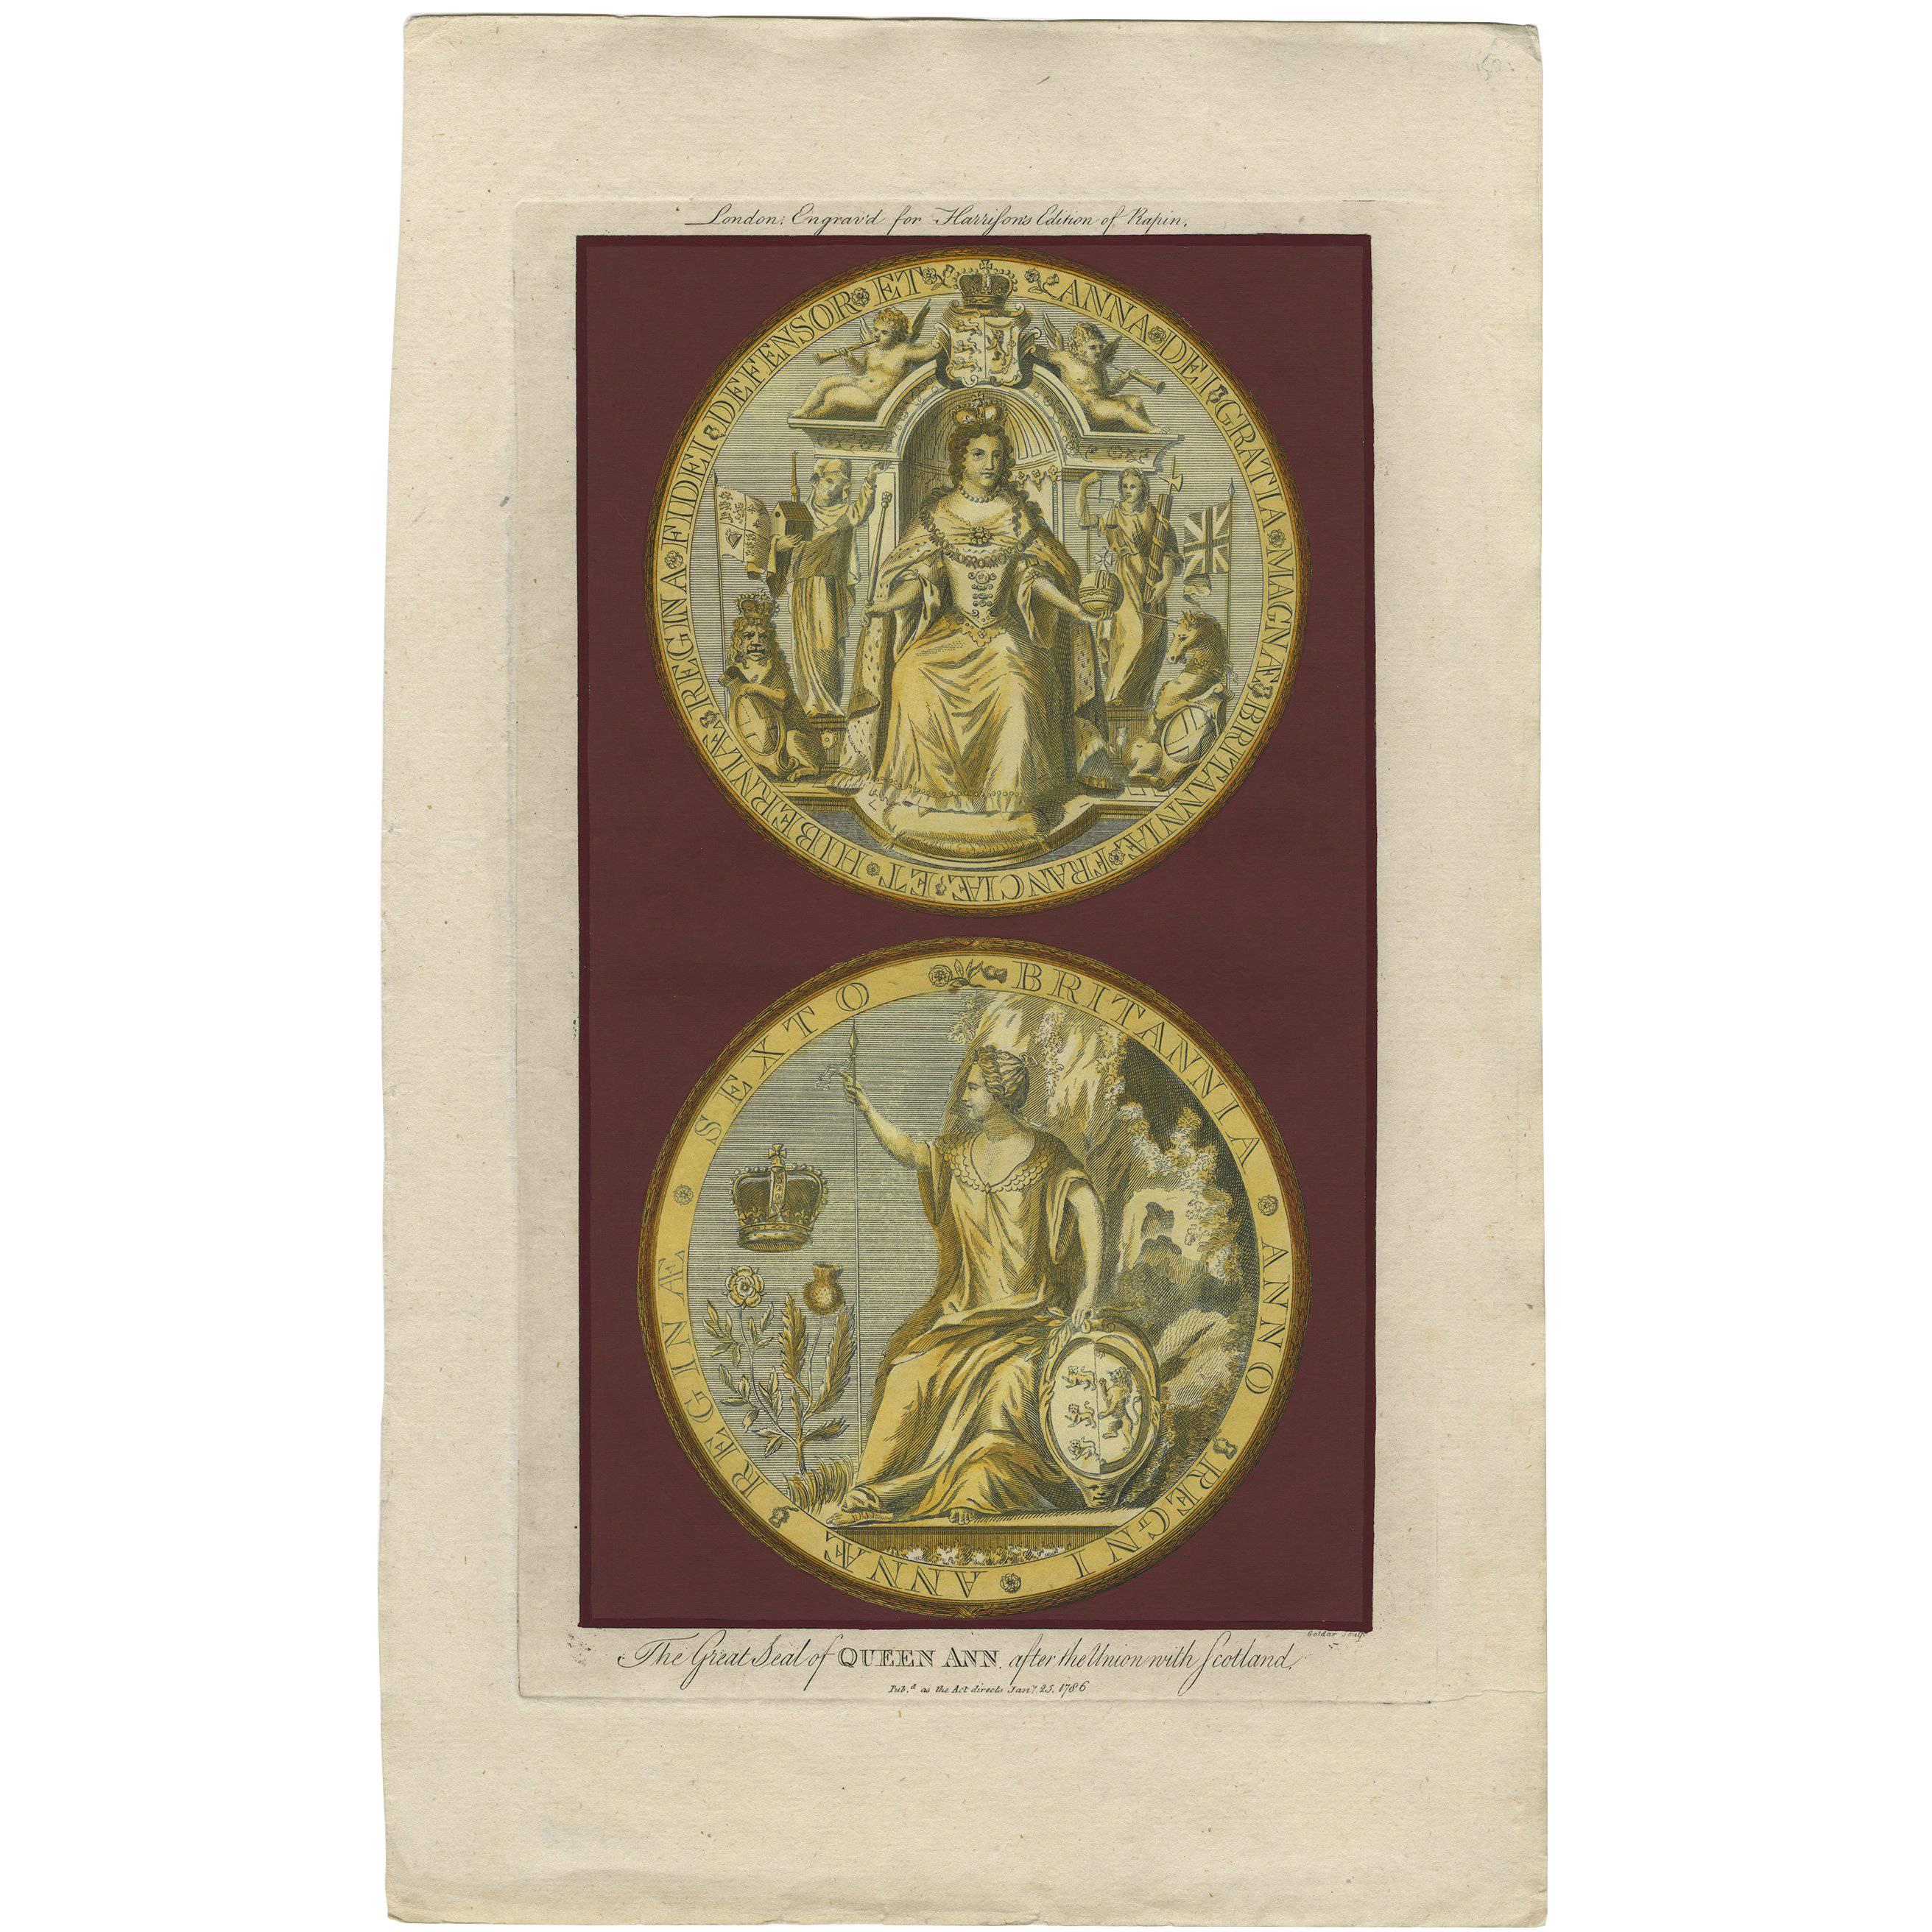 Impression ancienne du Grand Sceau de la Reine Anne par Harrison (1789)